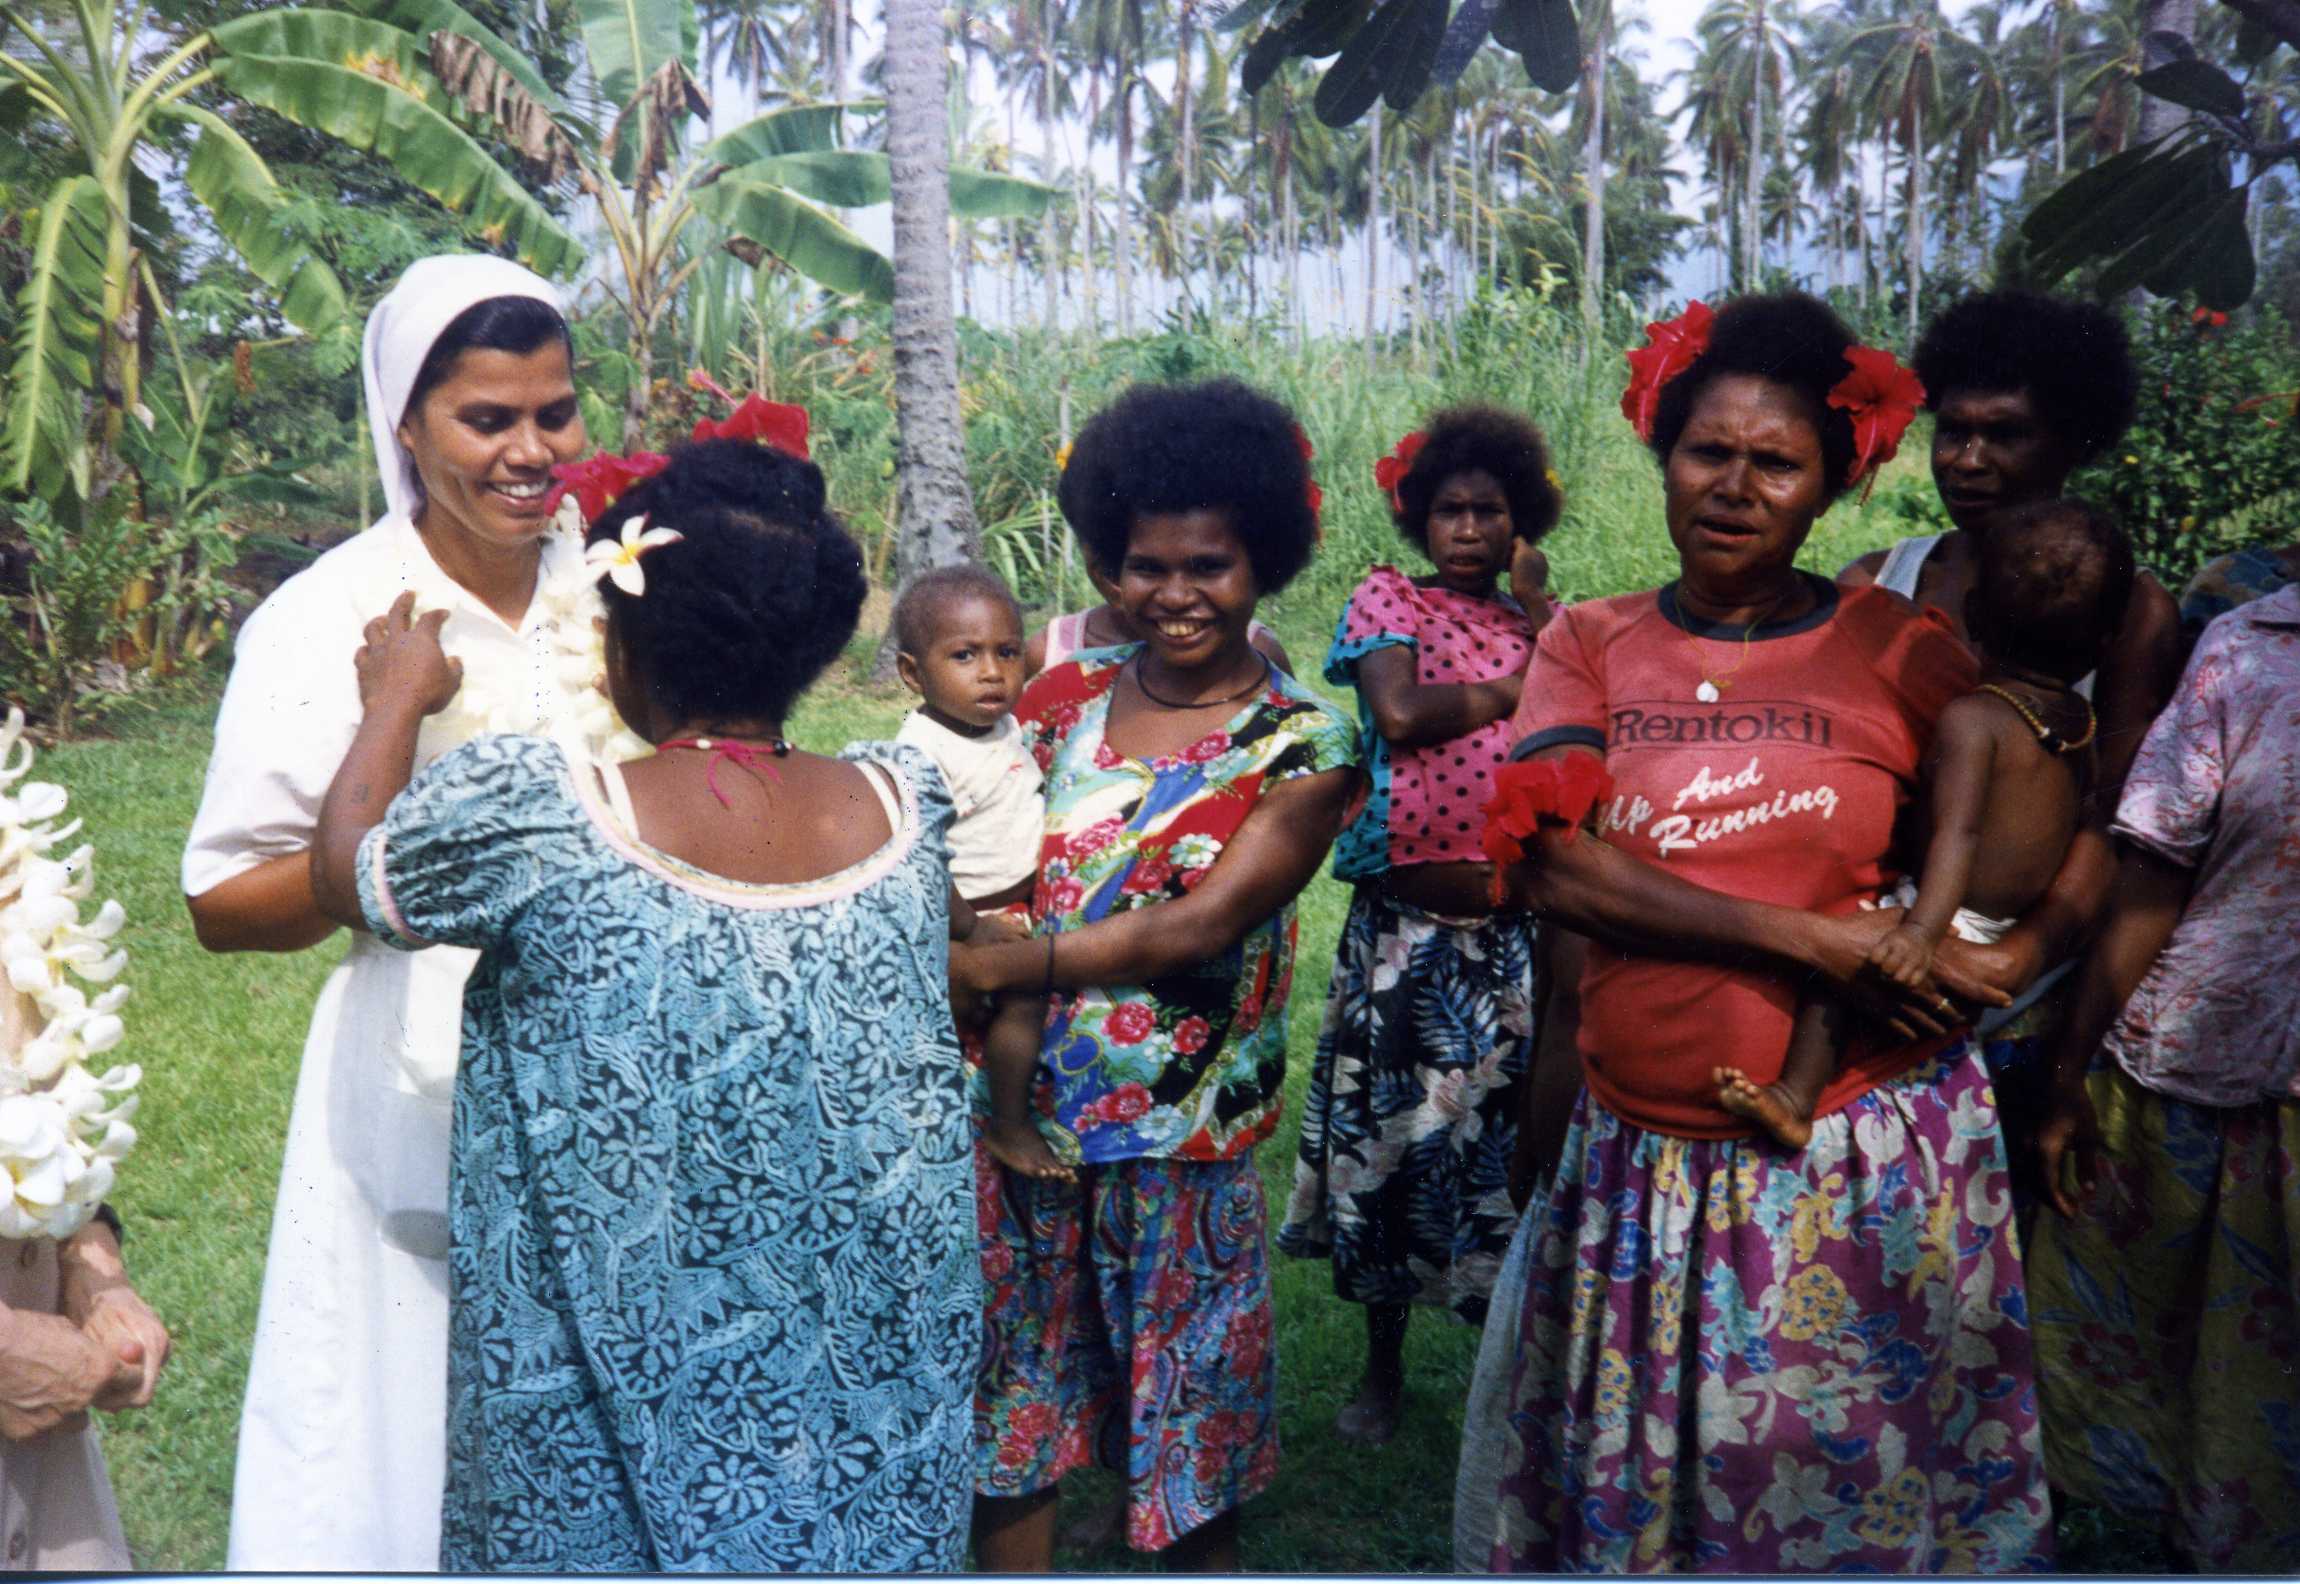 1989 in Papua New Guinea